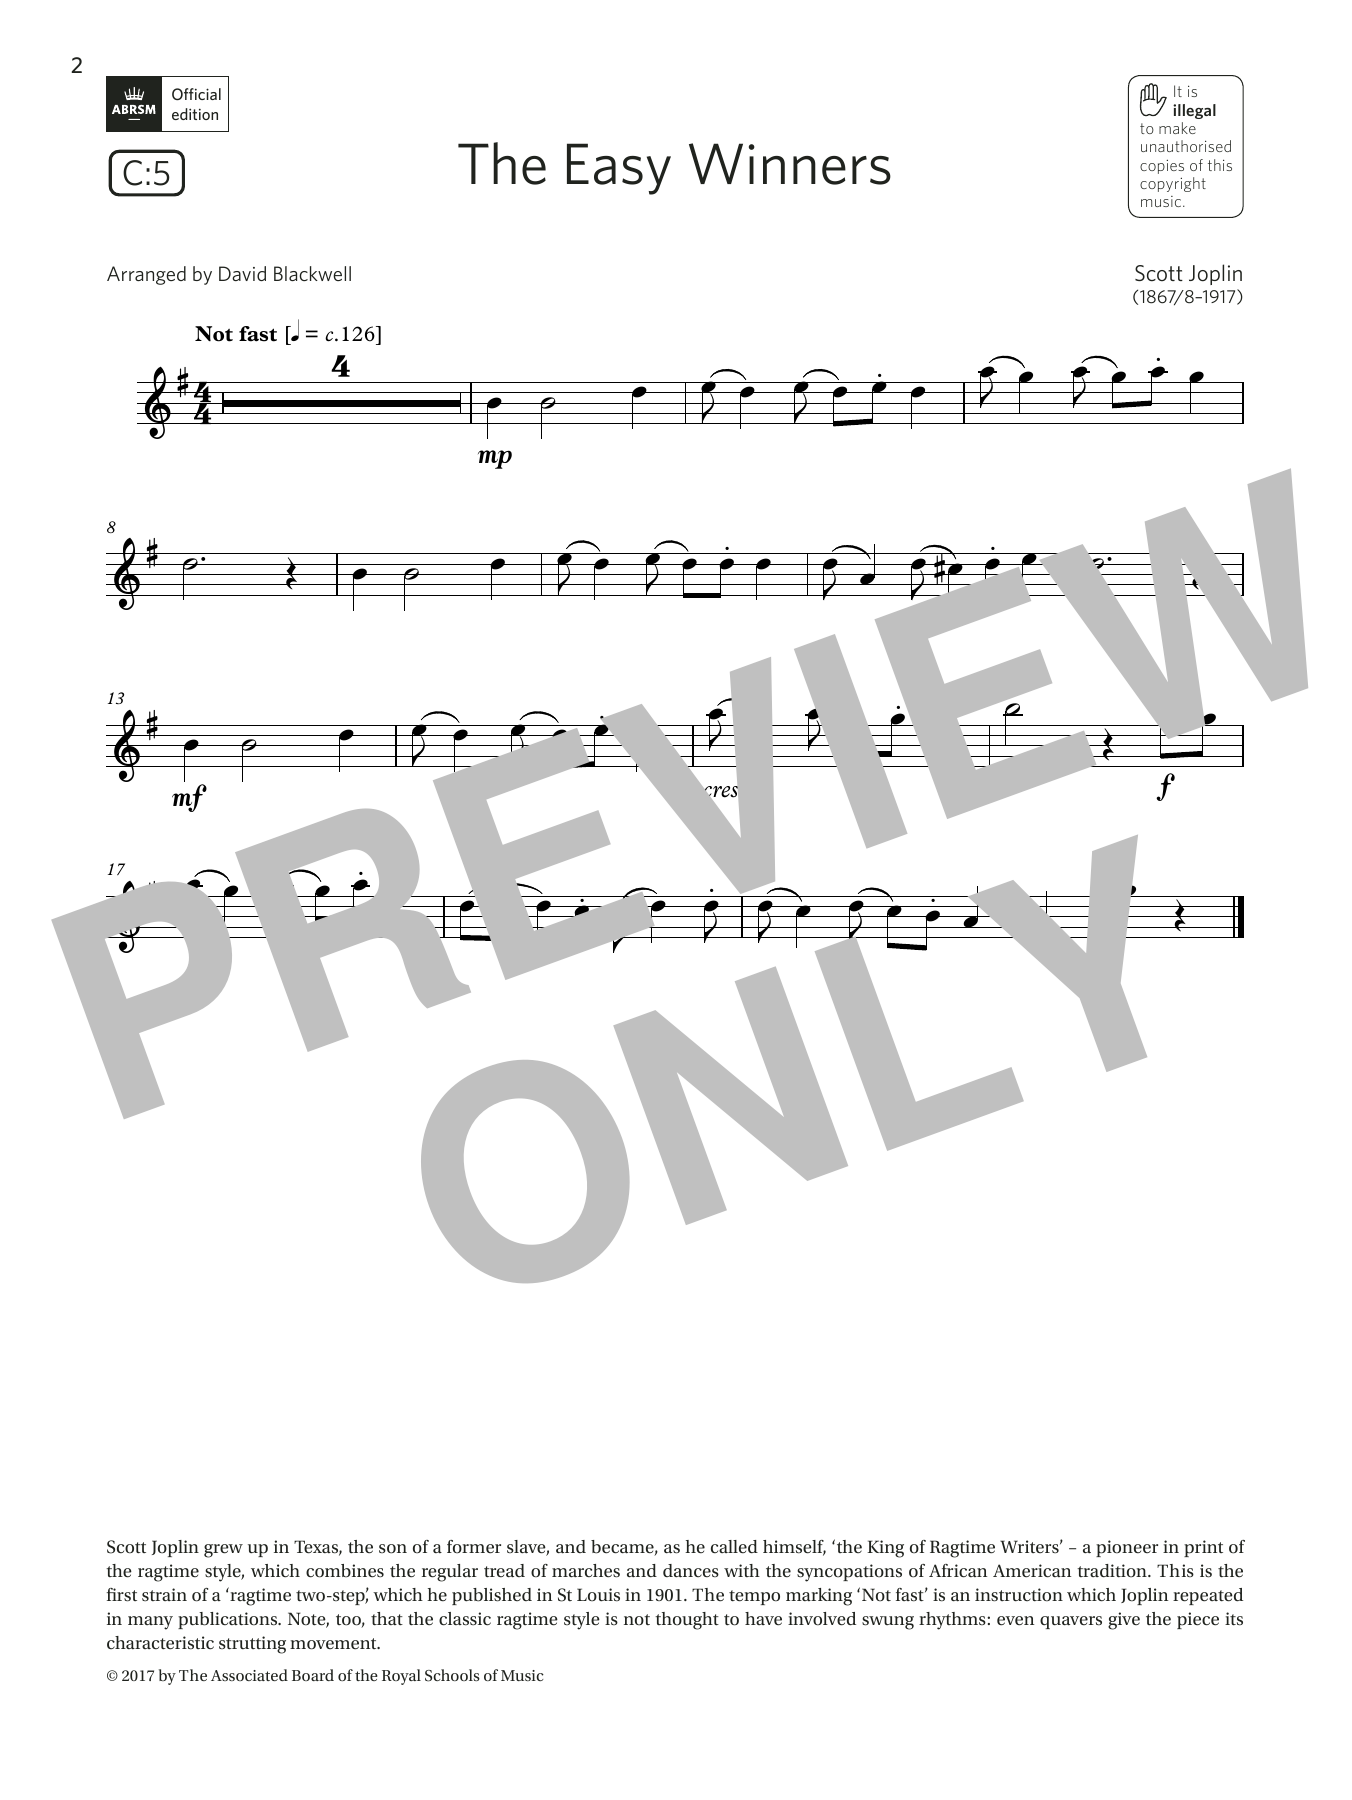 Download Scott Joplin The Easy Winners (Grade 1 List C5 from Sheet Music